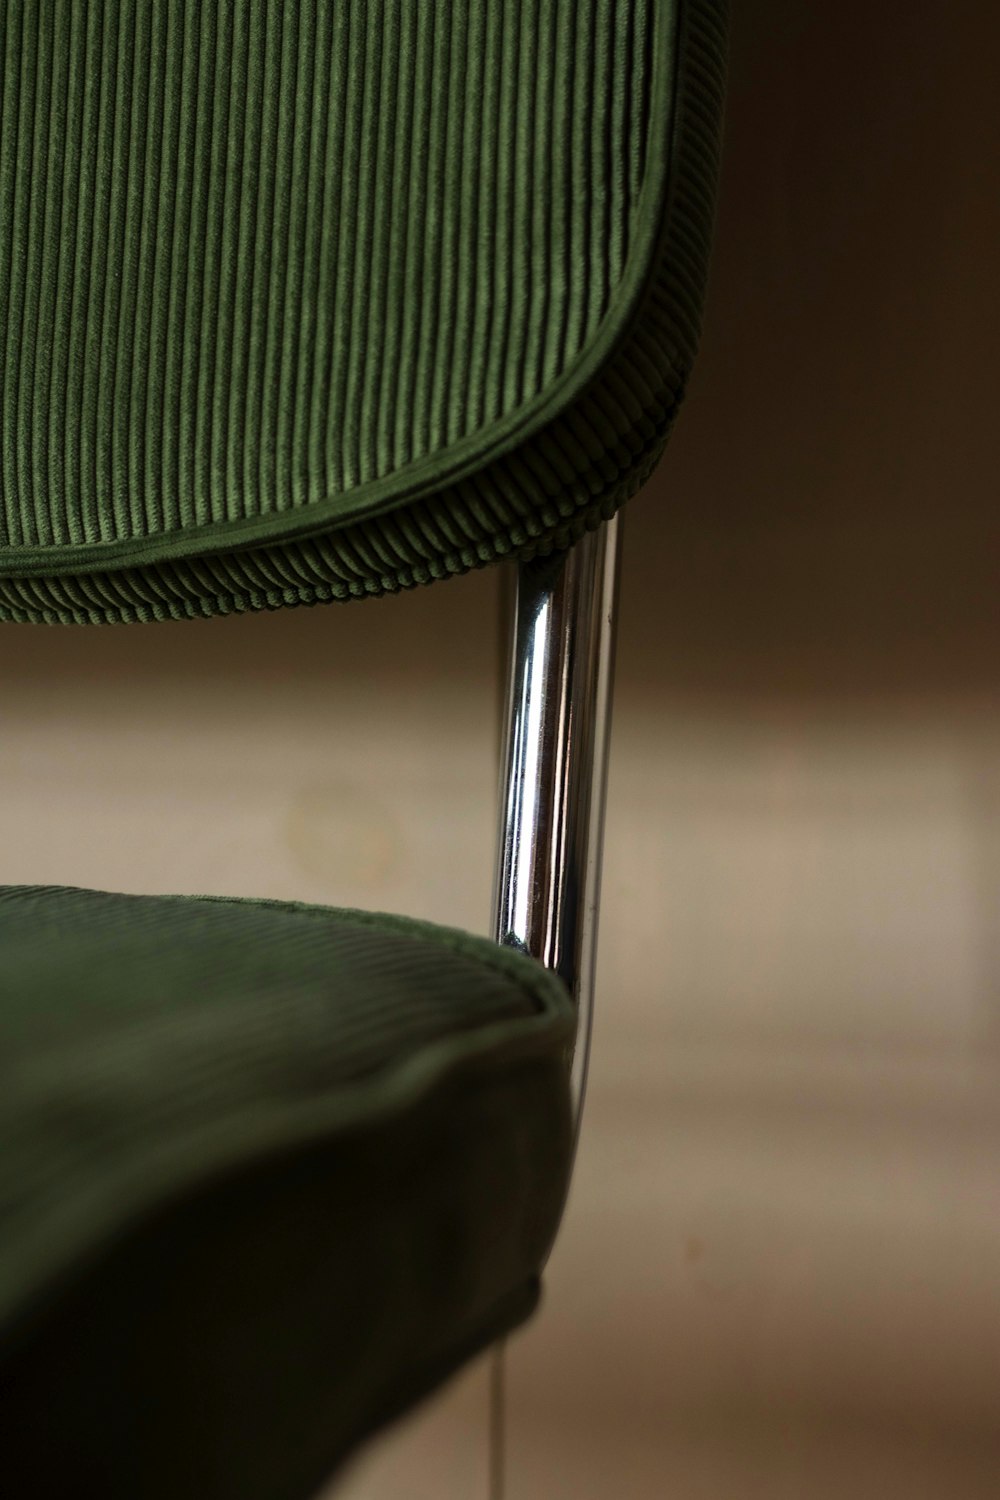 grüner und schwarzer Stuhl auf braunem Boden